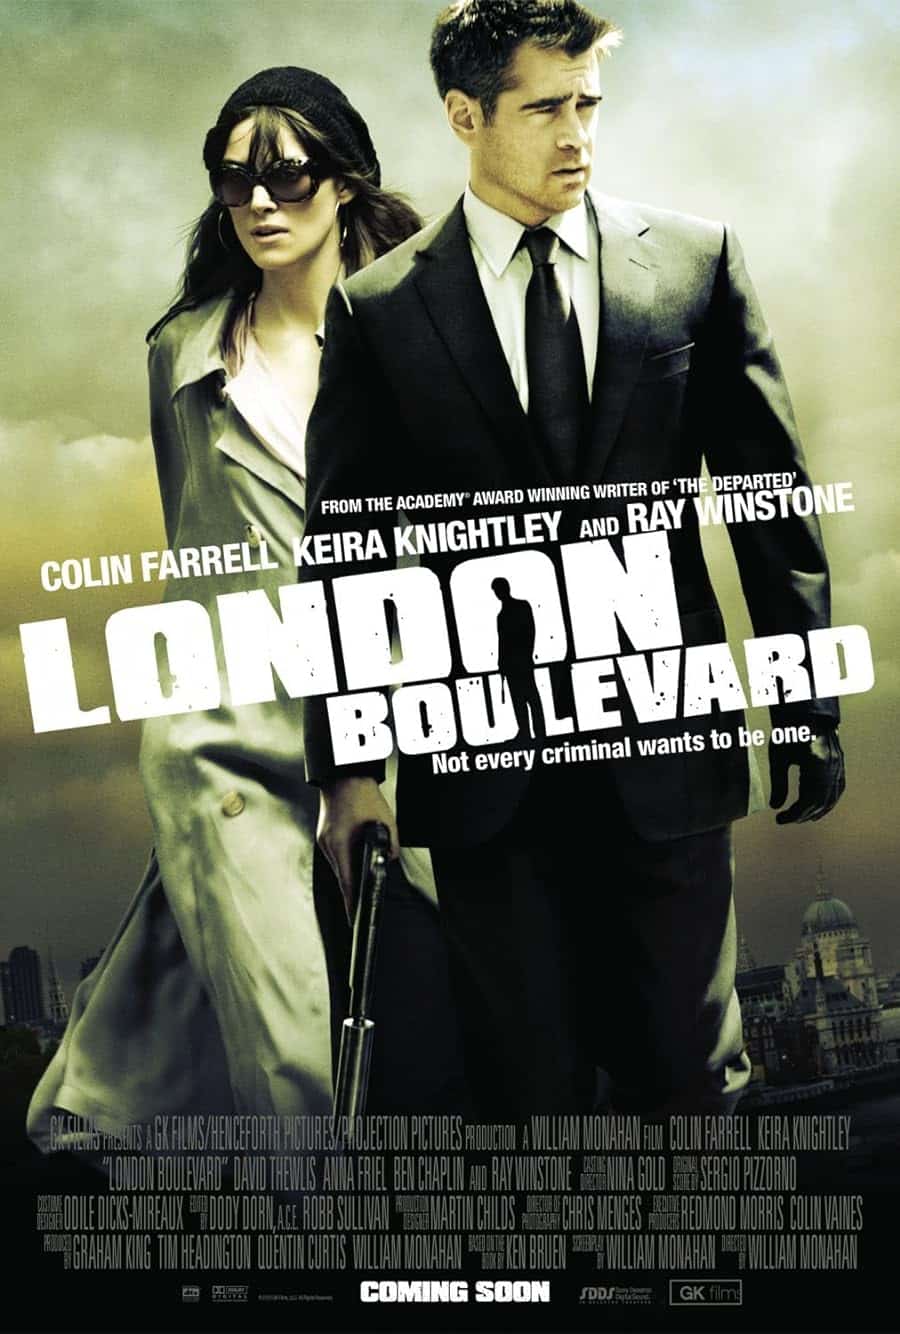 دانلود دوبله فارسی فیلم London Boulevard 2010